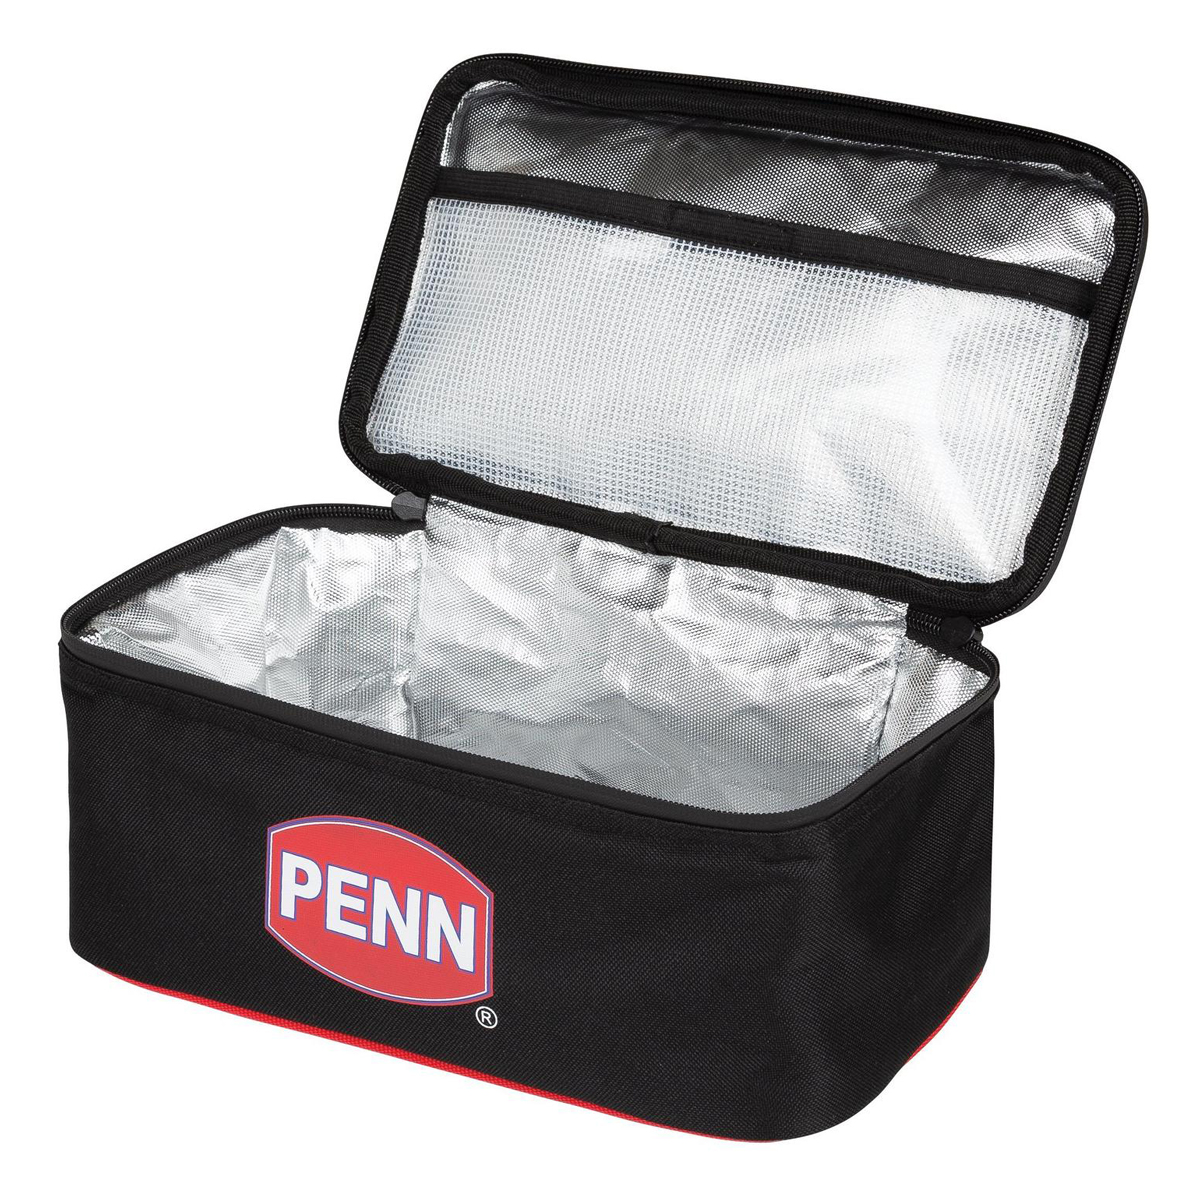 PENN Cool Bag Medium